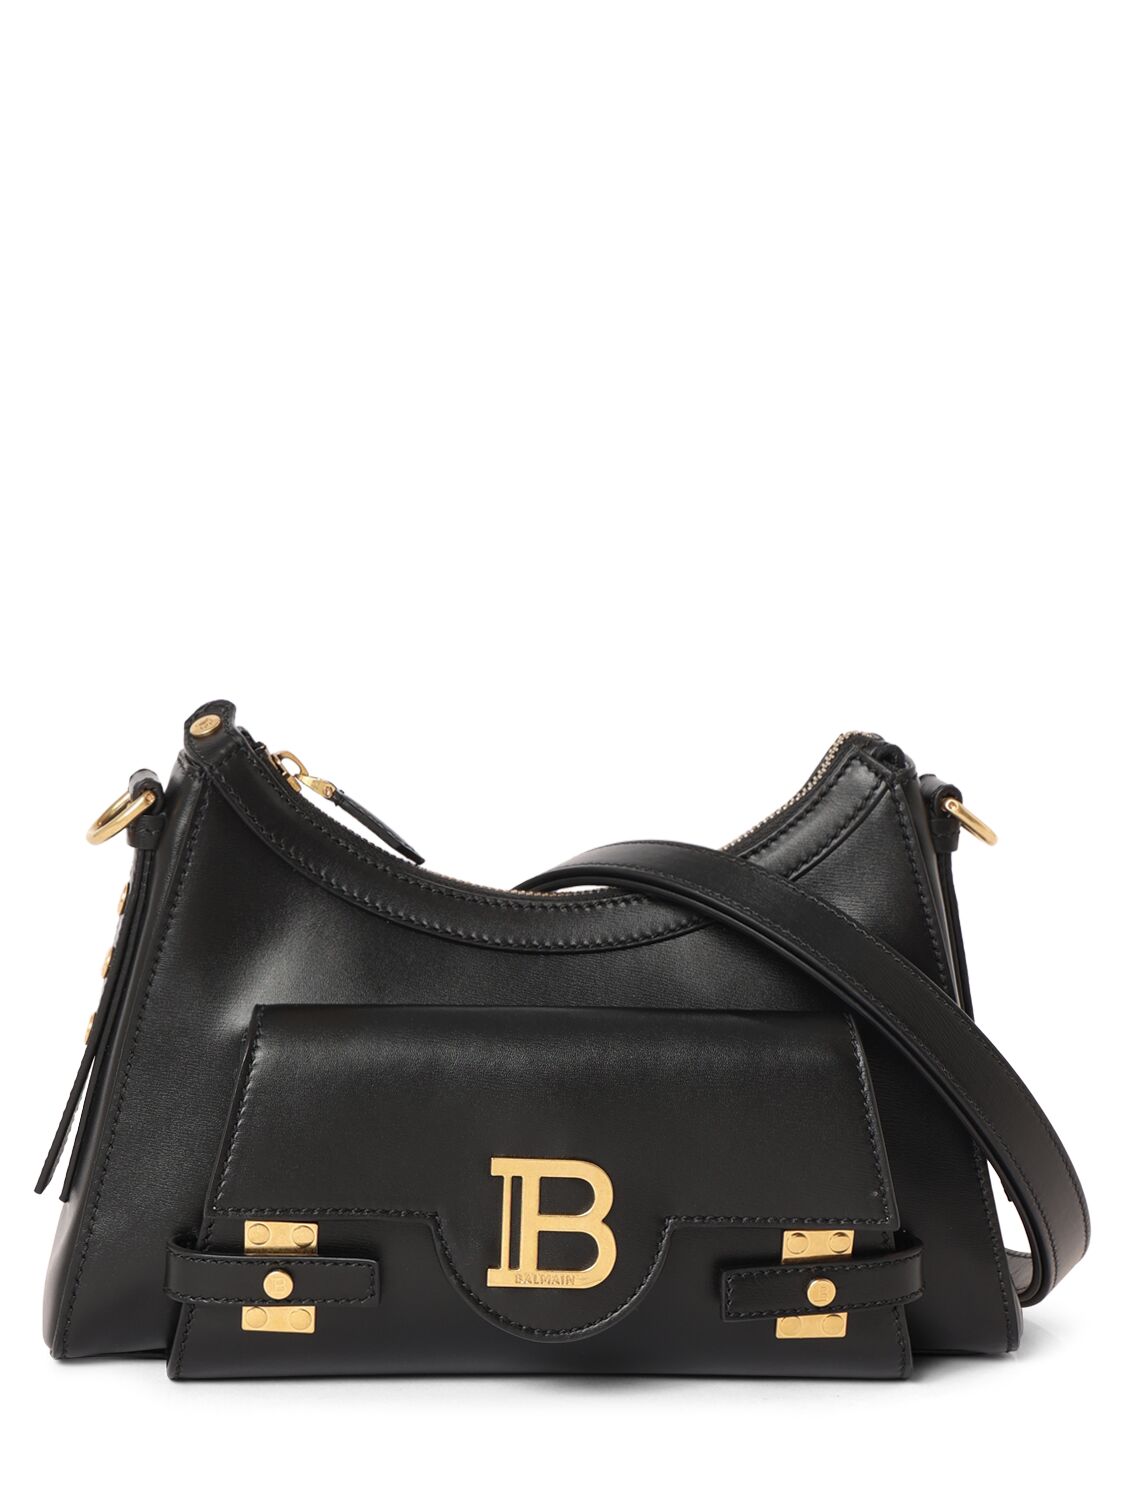 Balmain B-buzz Hobo Leather Bag In Noir